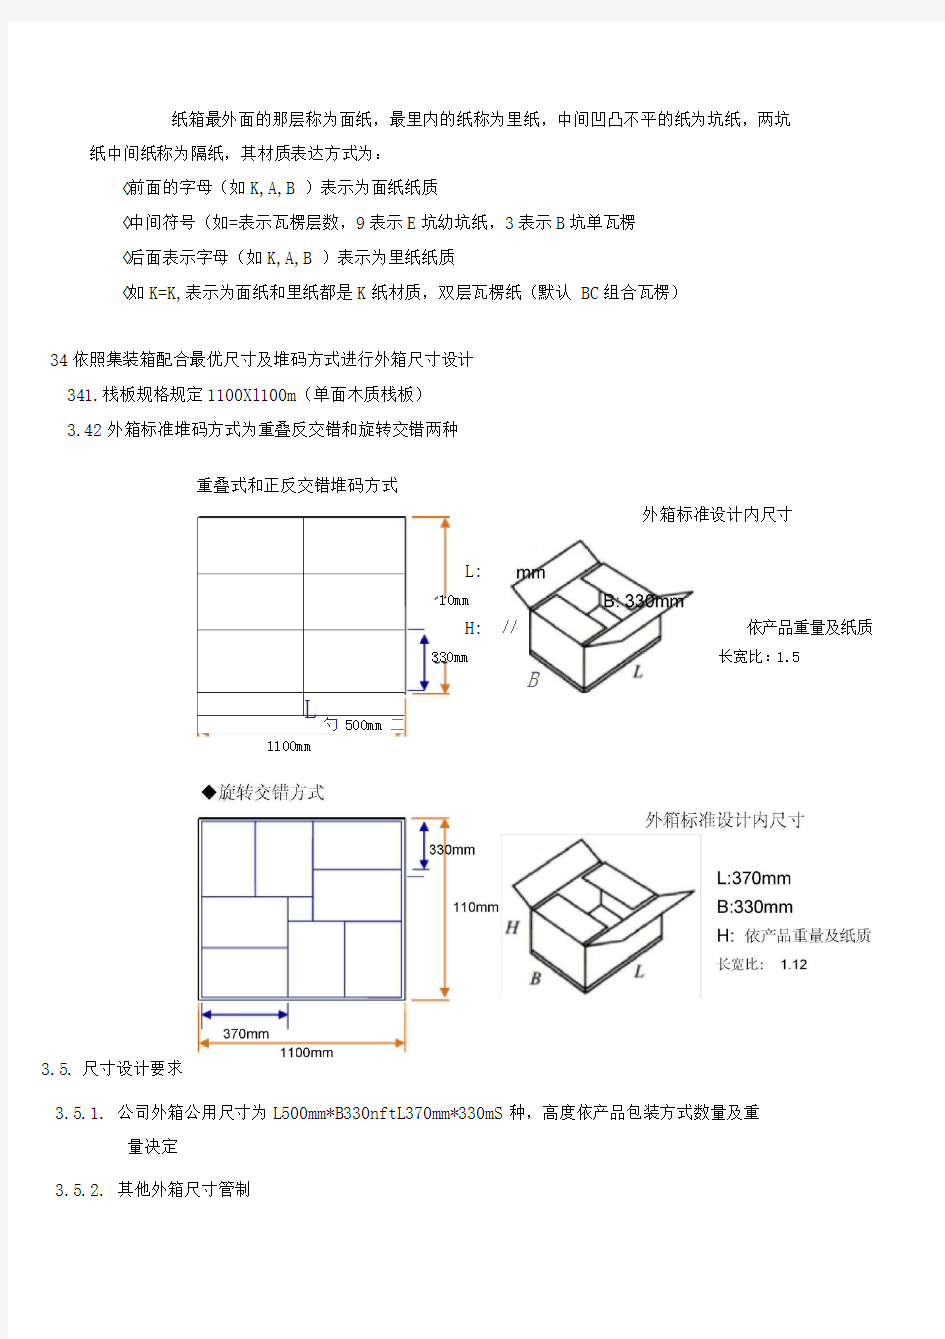 产品包装纸箱设计规范